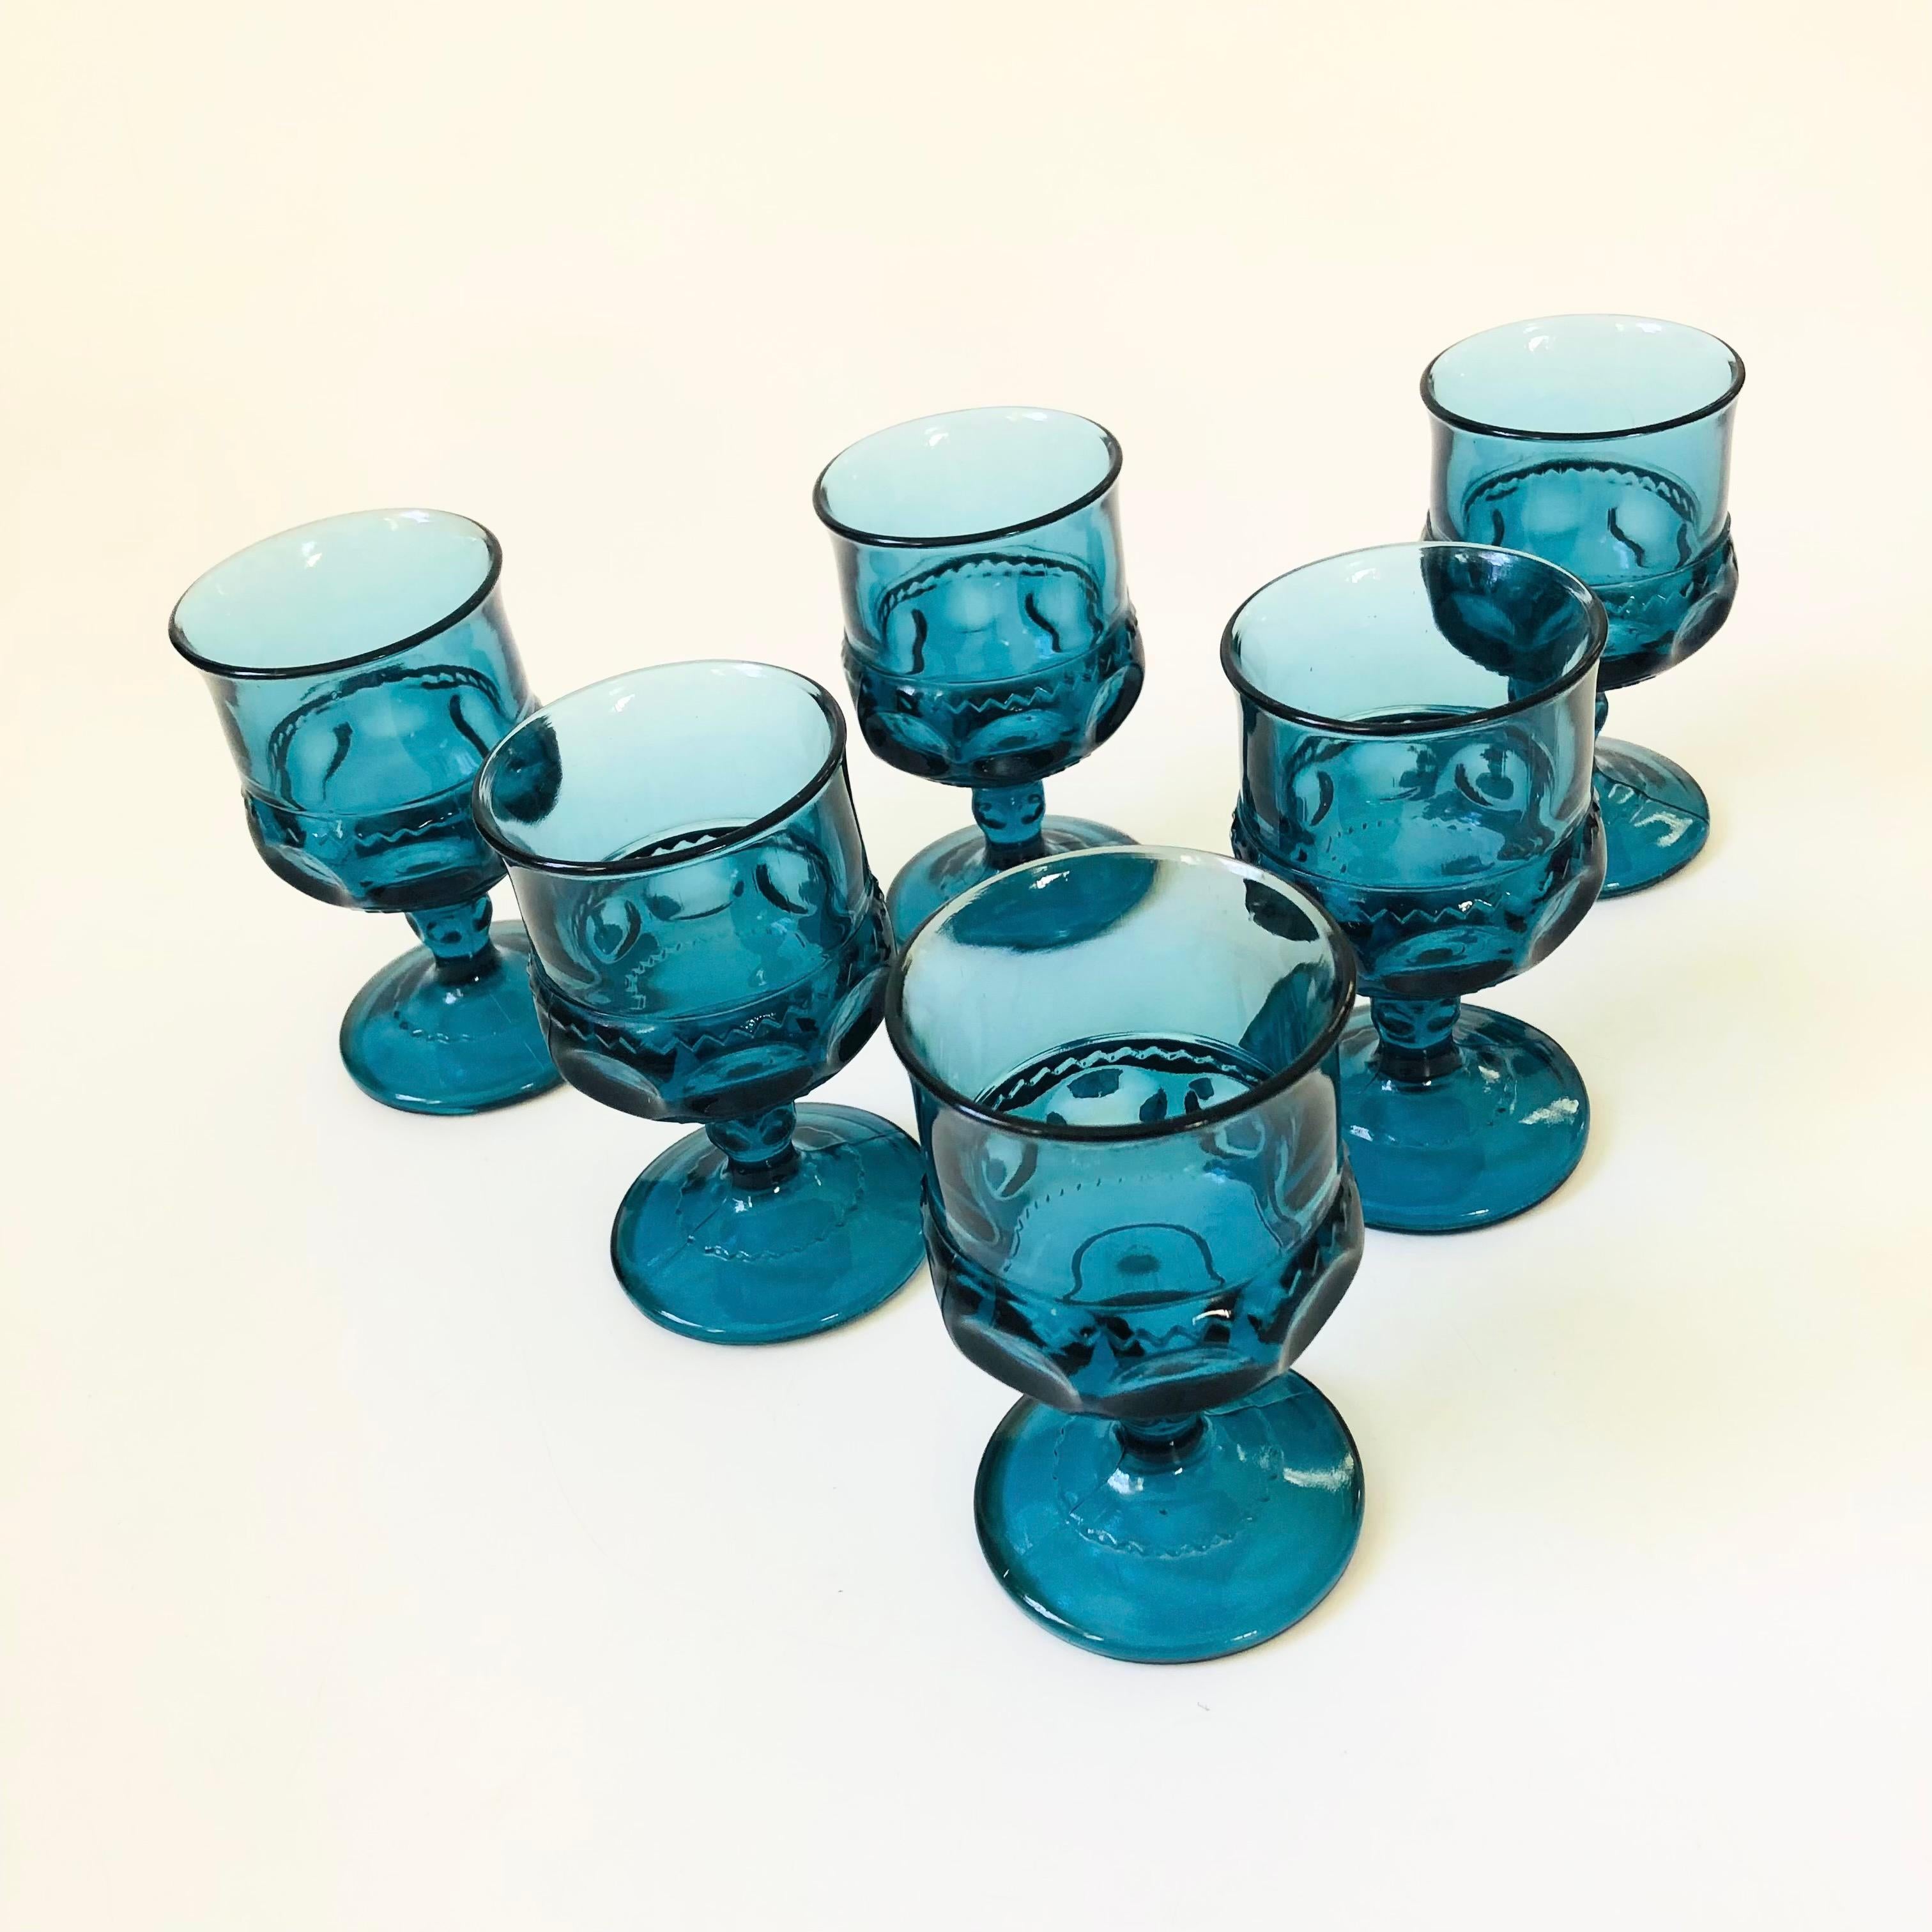 Un ensemble de 6 gobelets vintage au design orné en verre bleu. Fabriqué dans le motif King's Crown par Indiana Glass. Parfait pour un petit verre de vin ou de champagne.

